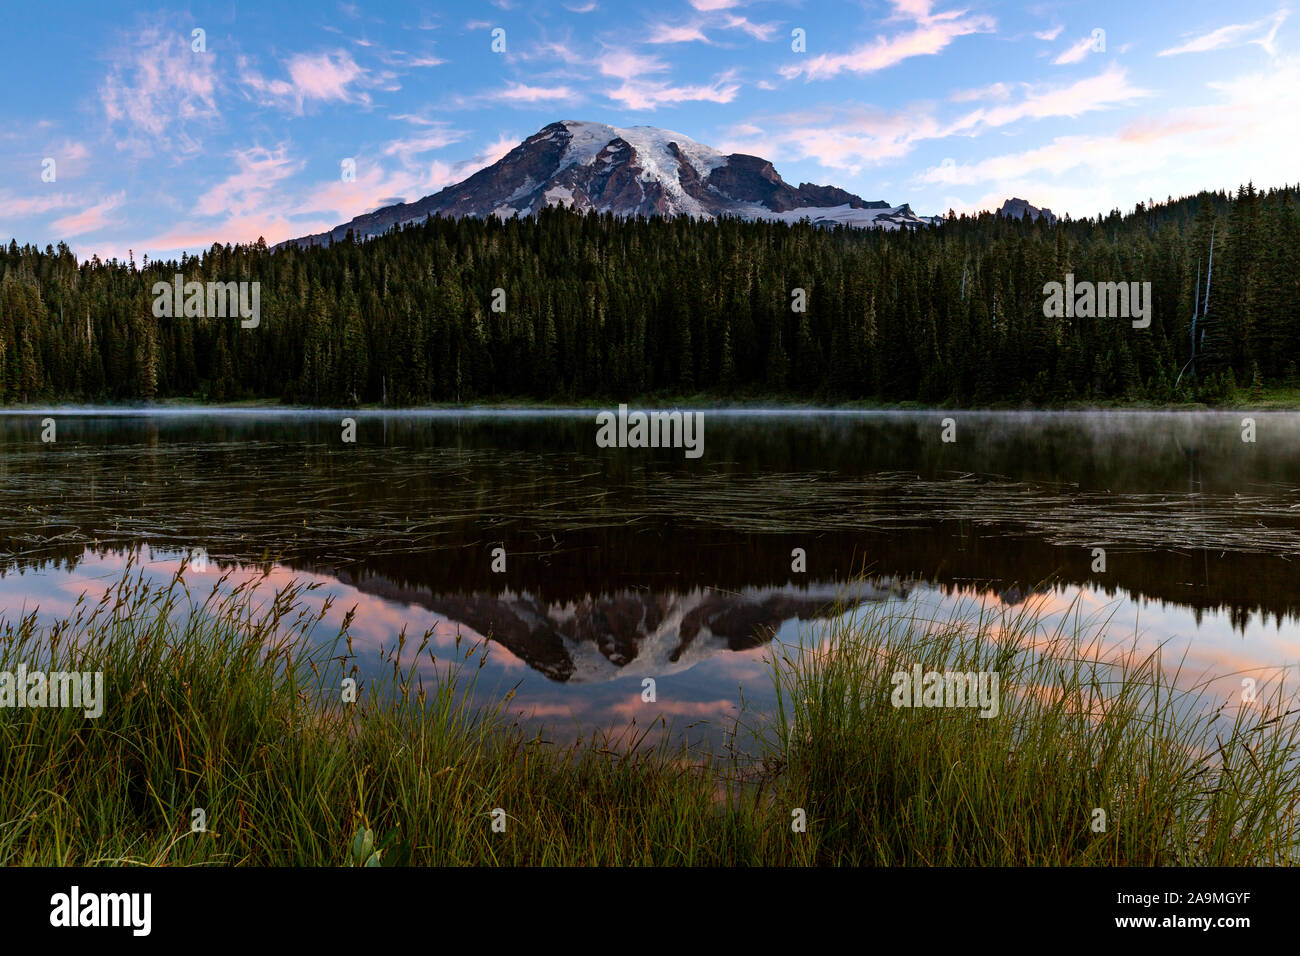 WA17292-00...WASHINGTON - El amanecer en la reflexión de los lagos con el Monte Rainer se refleja en las aguas tranquilas. El Parque Nacional Monte Rainier. Foto de stock